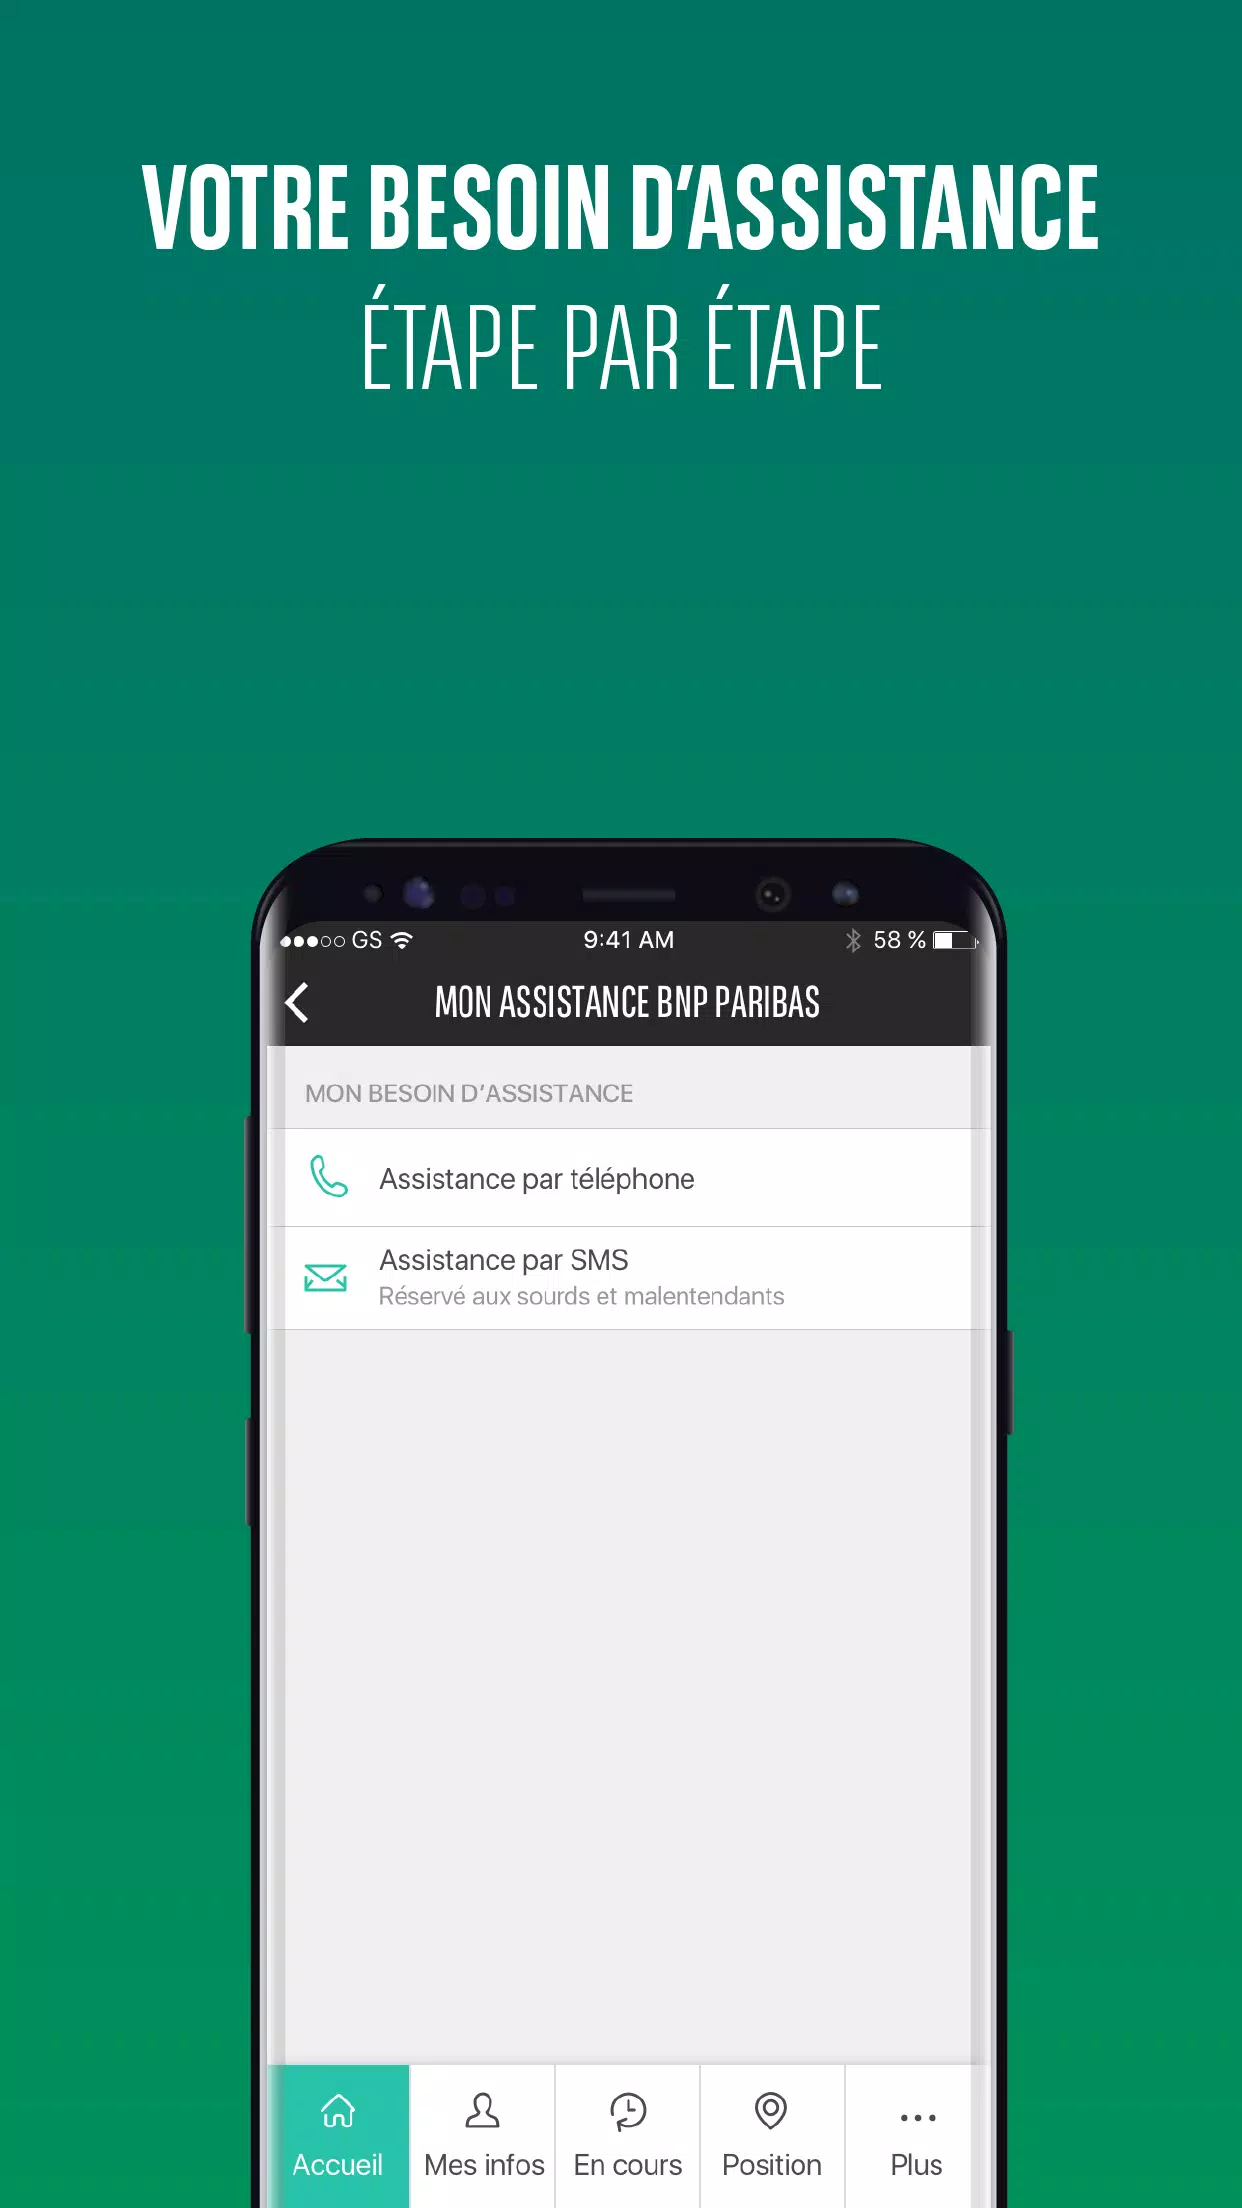 Mon Assistance BNP Paribas for Android - APK Download